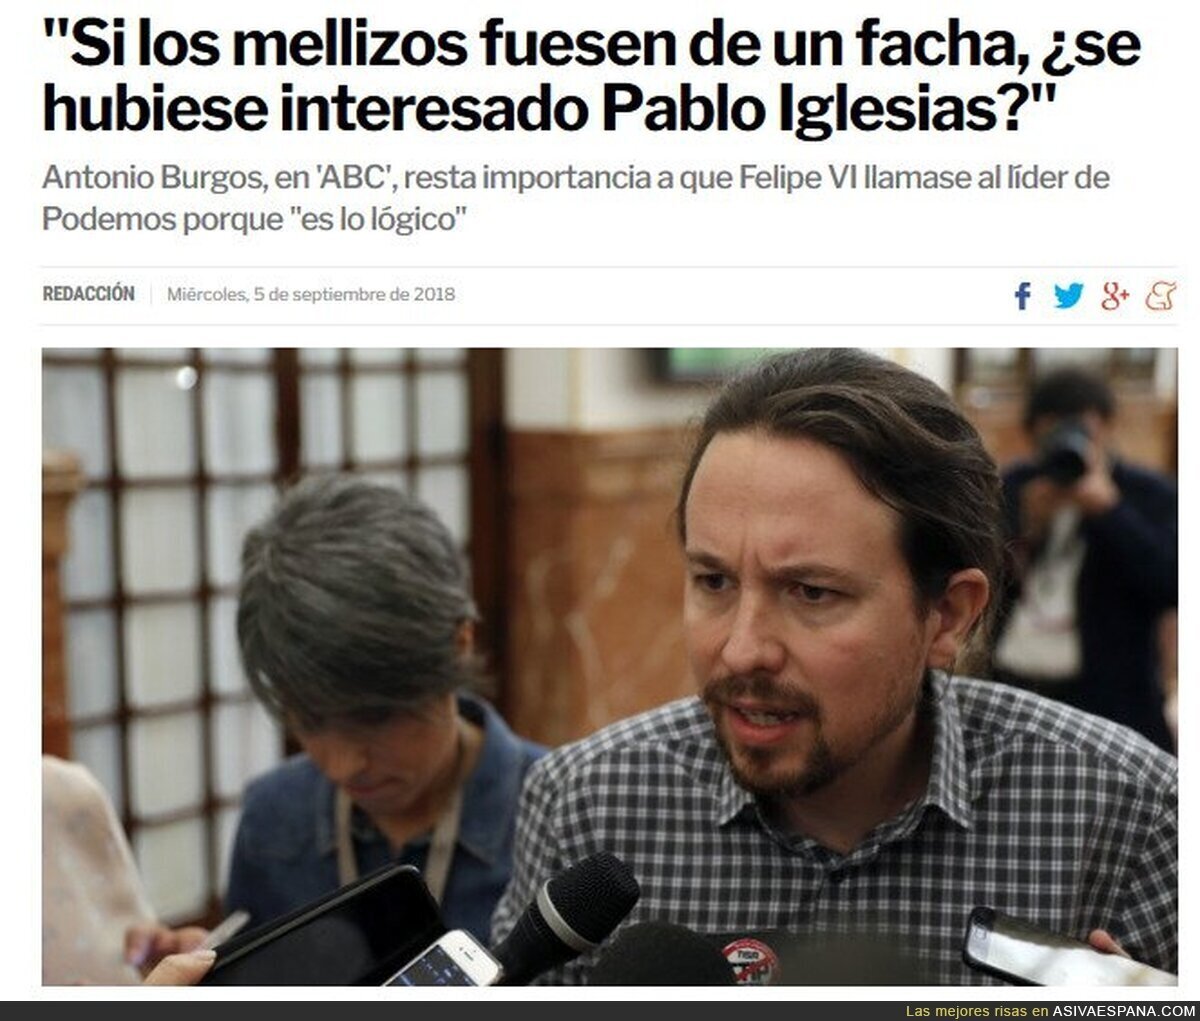 Antonio Burgos, el ABC y el periodismo